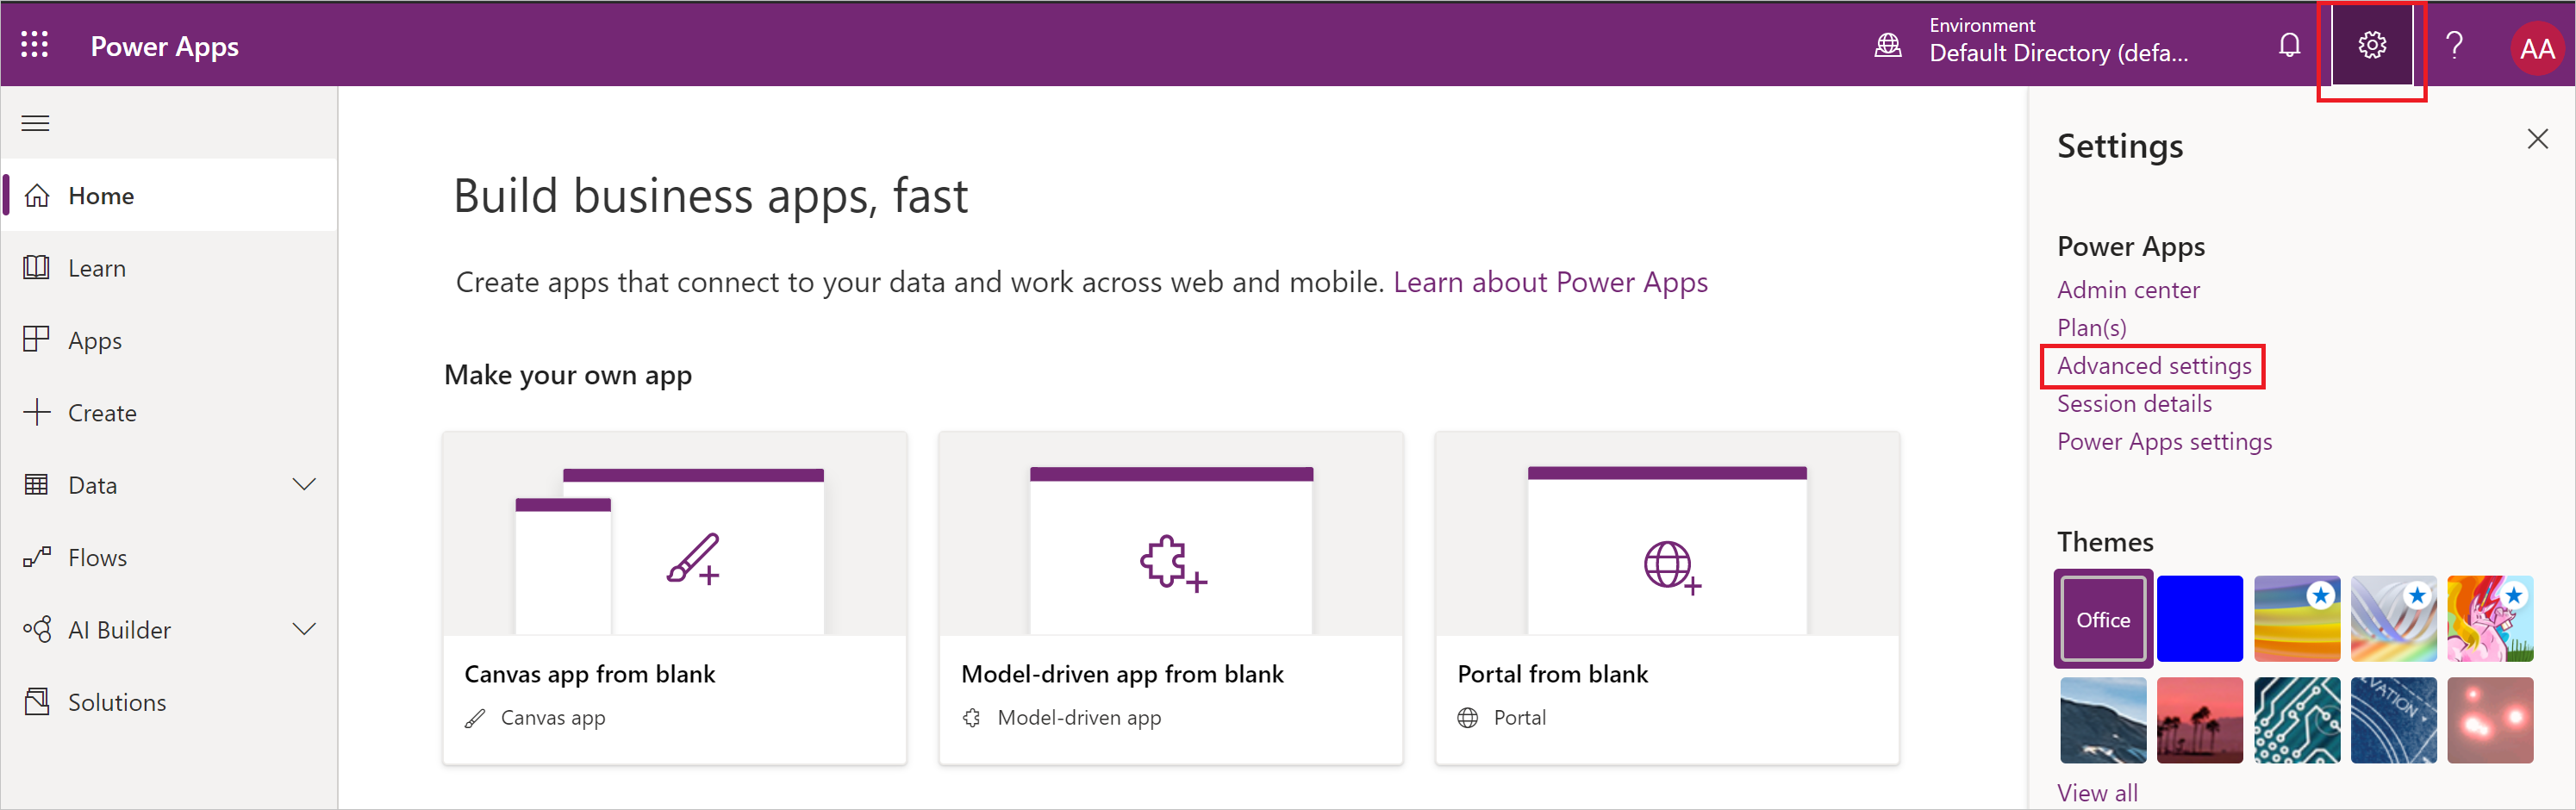 Screenshot des Menüs Power Apps Einstellungen mit hervorgehobenen erweiterten Einstellungen.